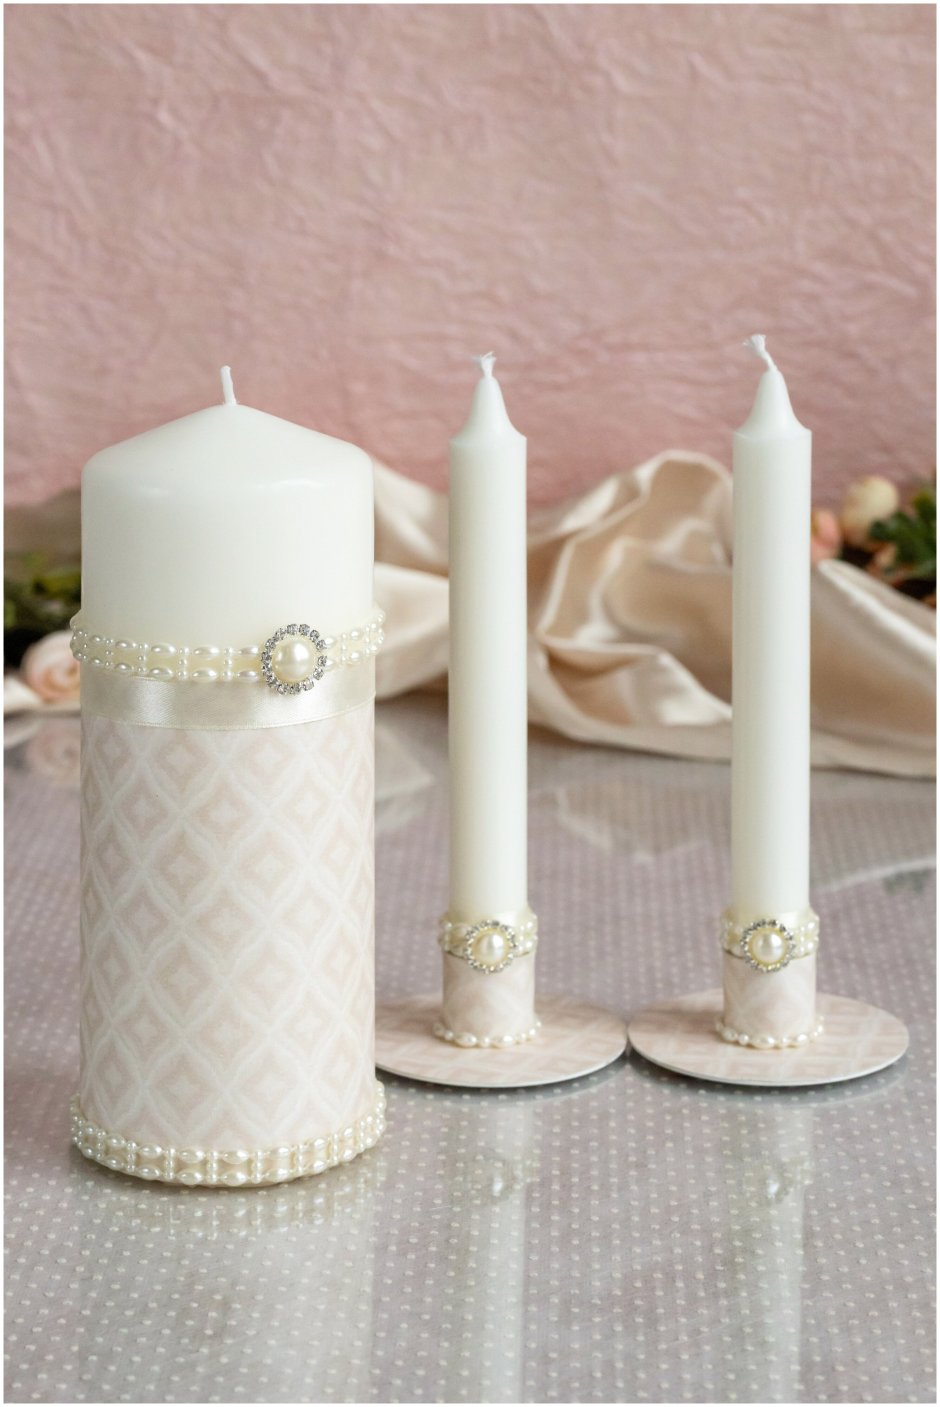 Свечи для свадебного очага